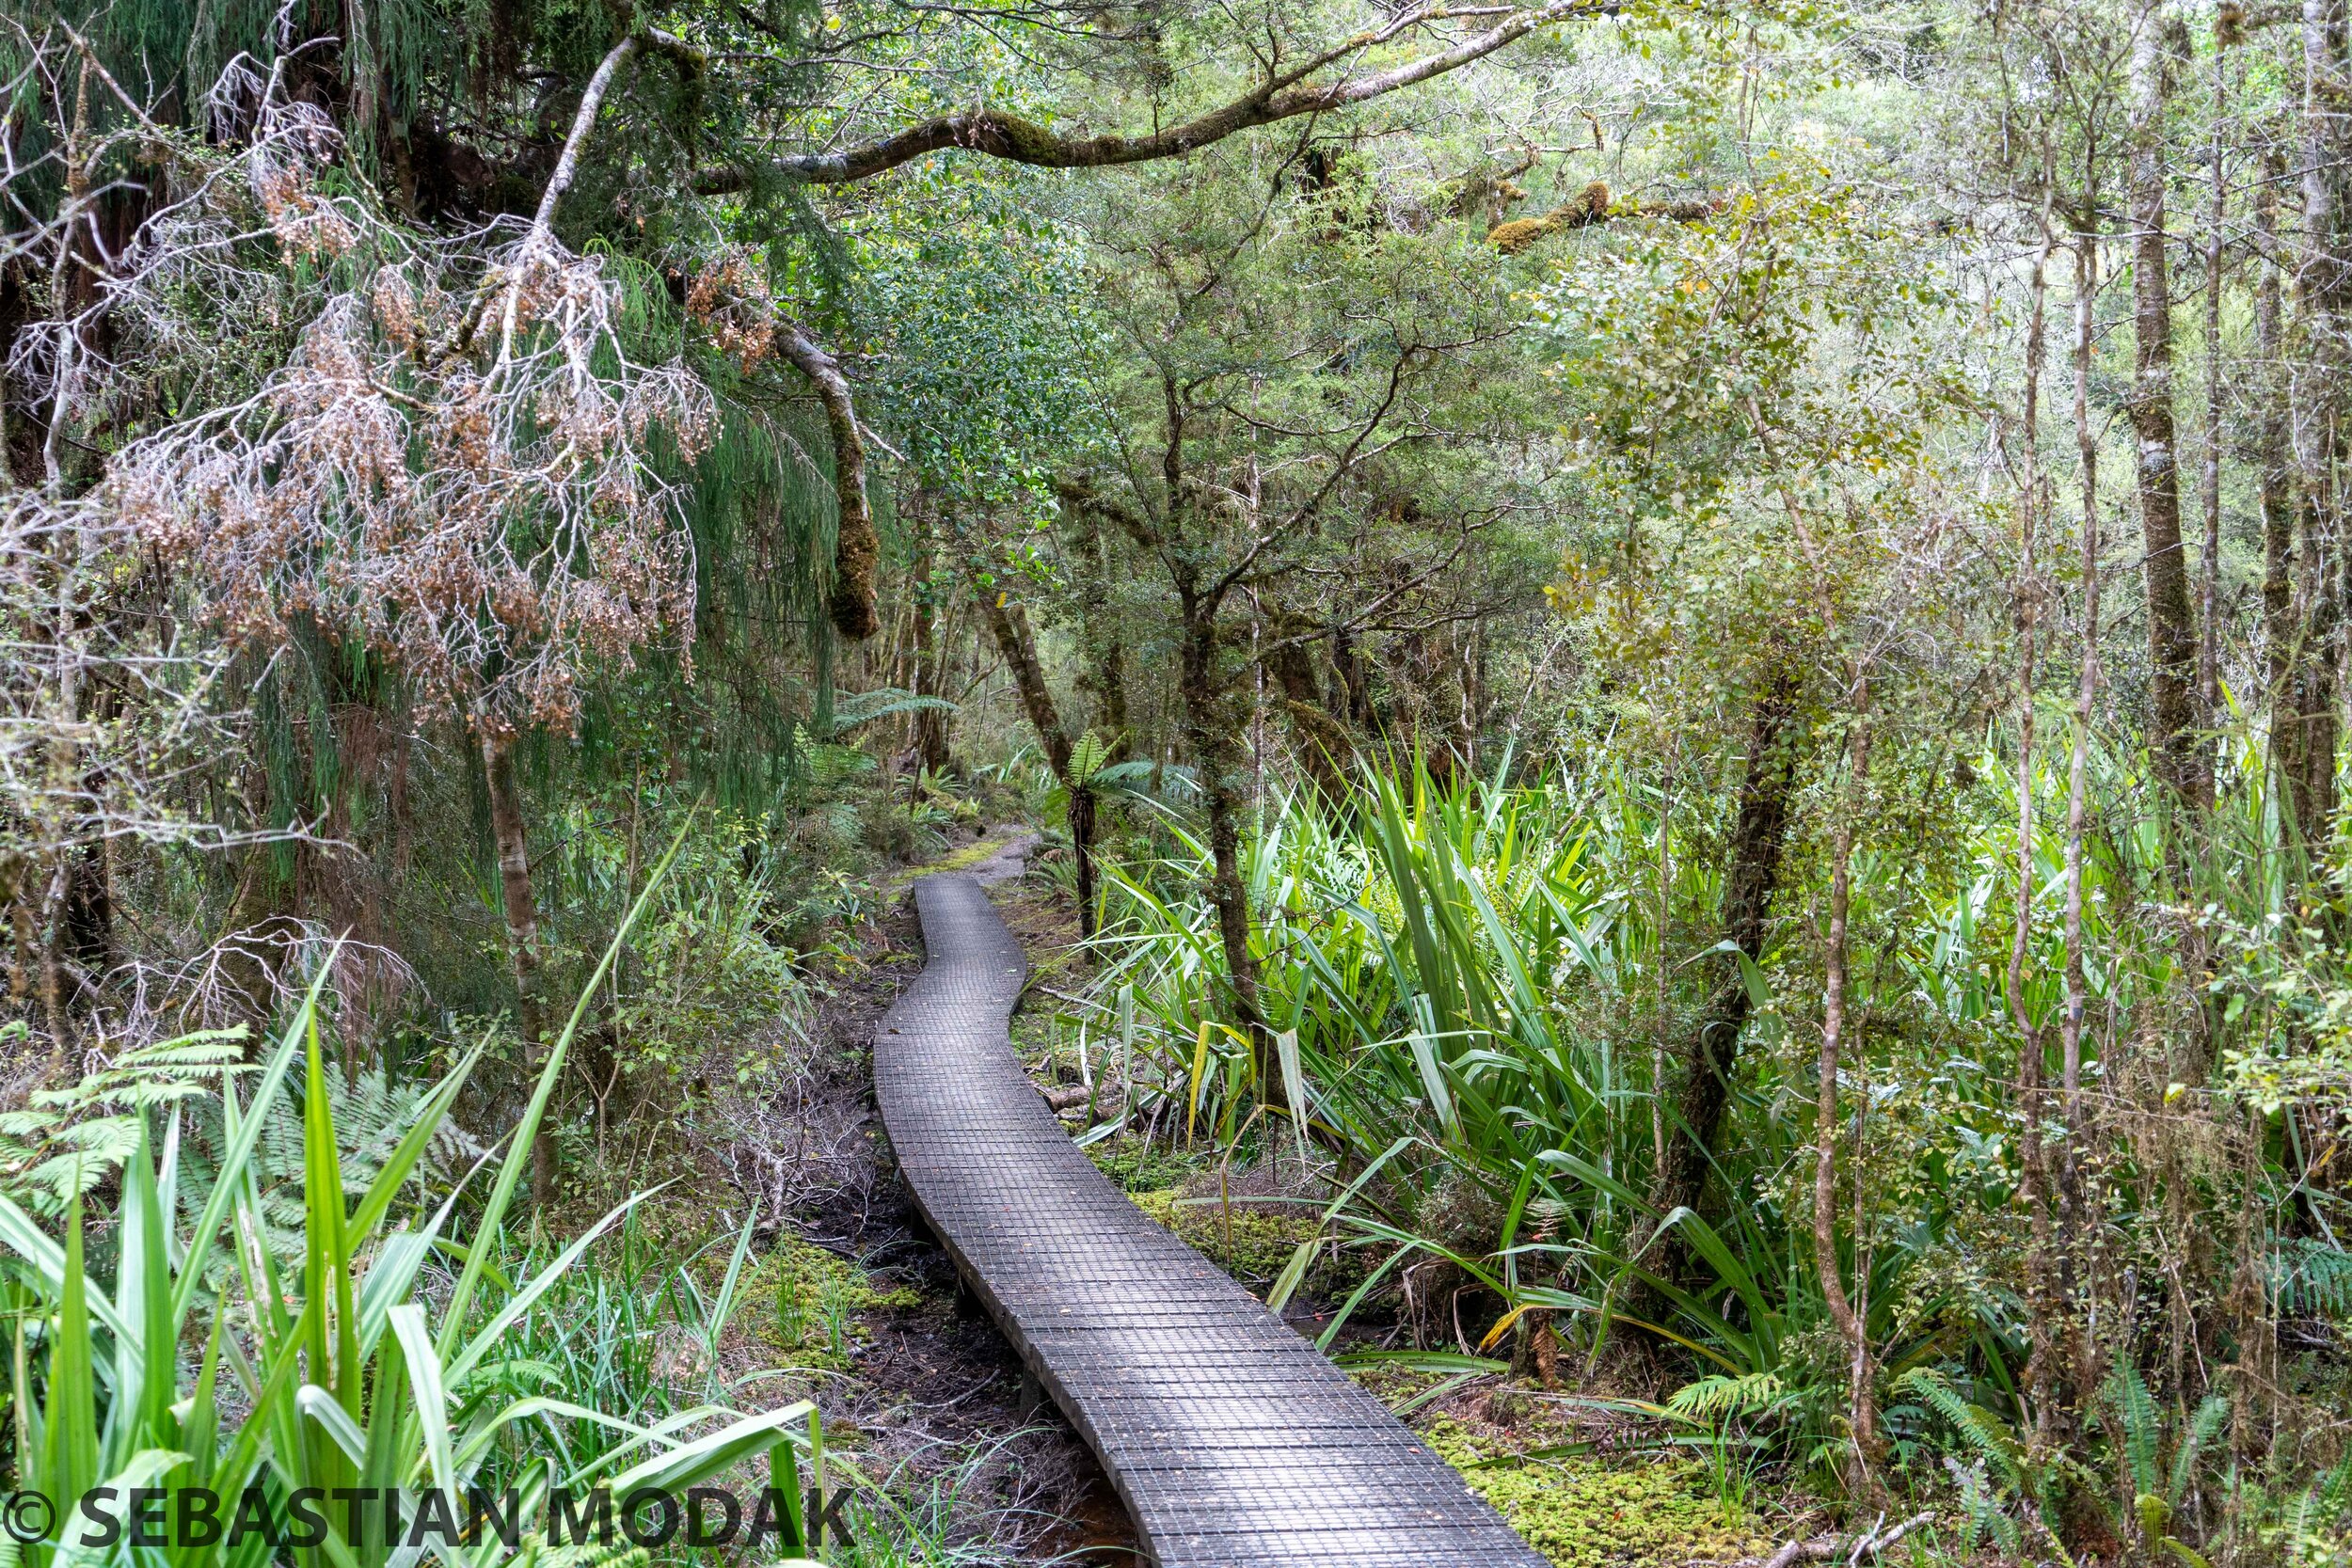  Paparoa Track, New Zealand 